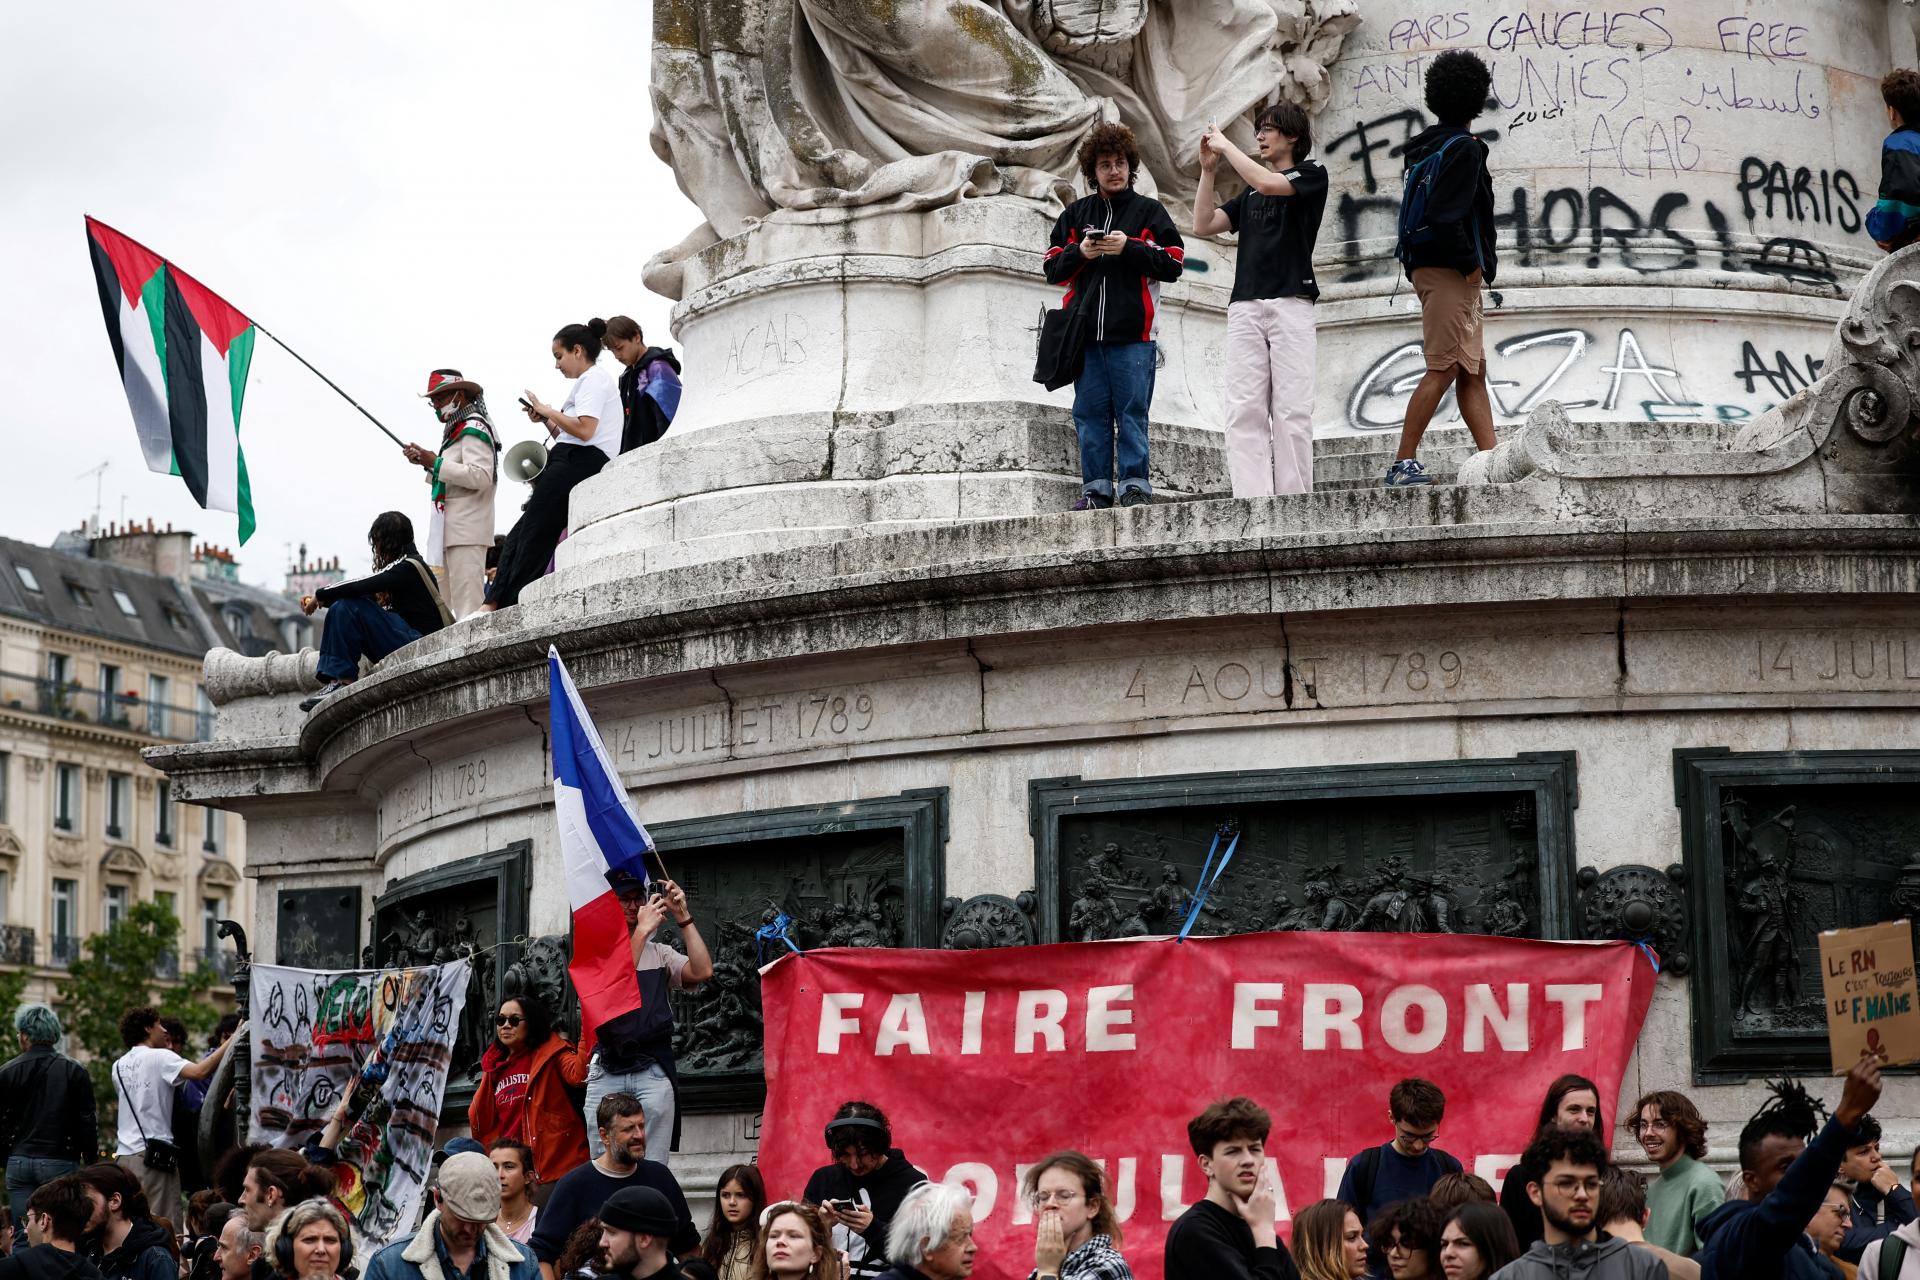 Desaťtisíce ľudí protestovali vo Francúzsku pred voľbami proti krajnej pravici